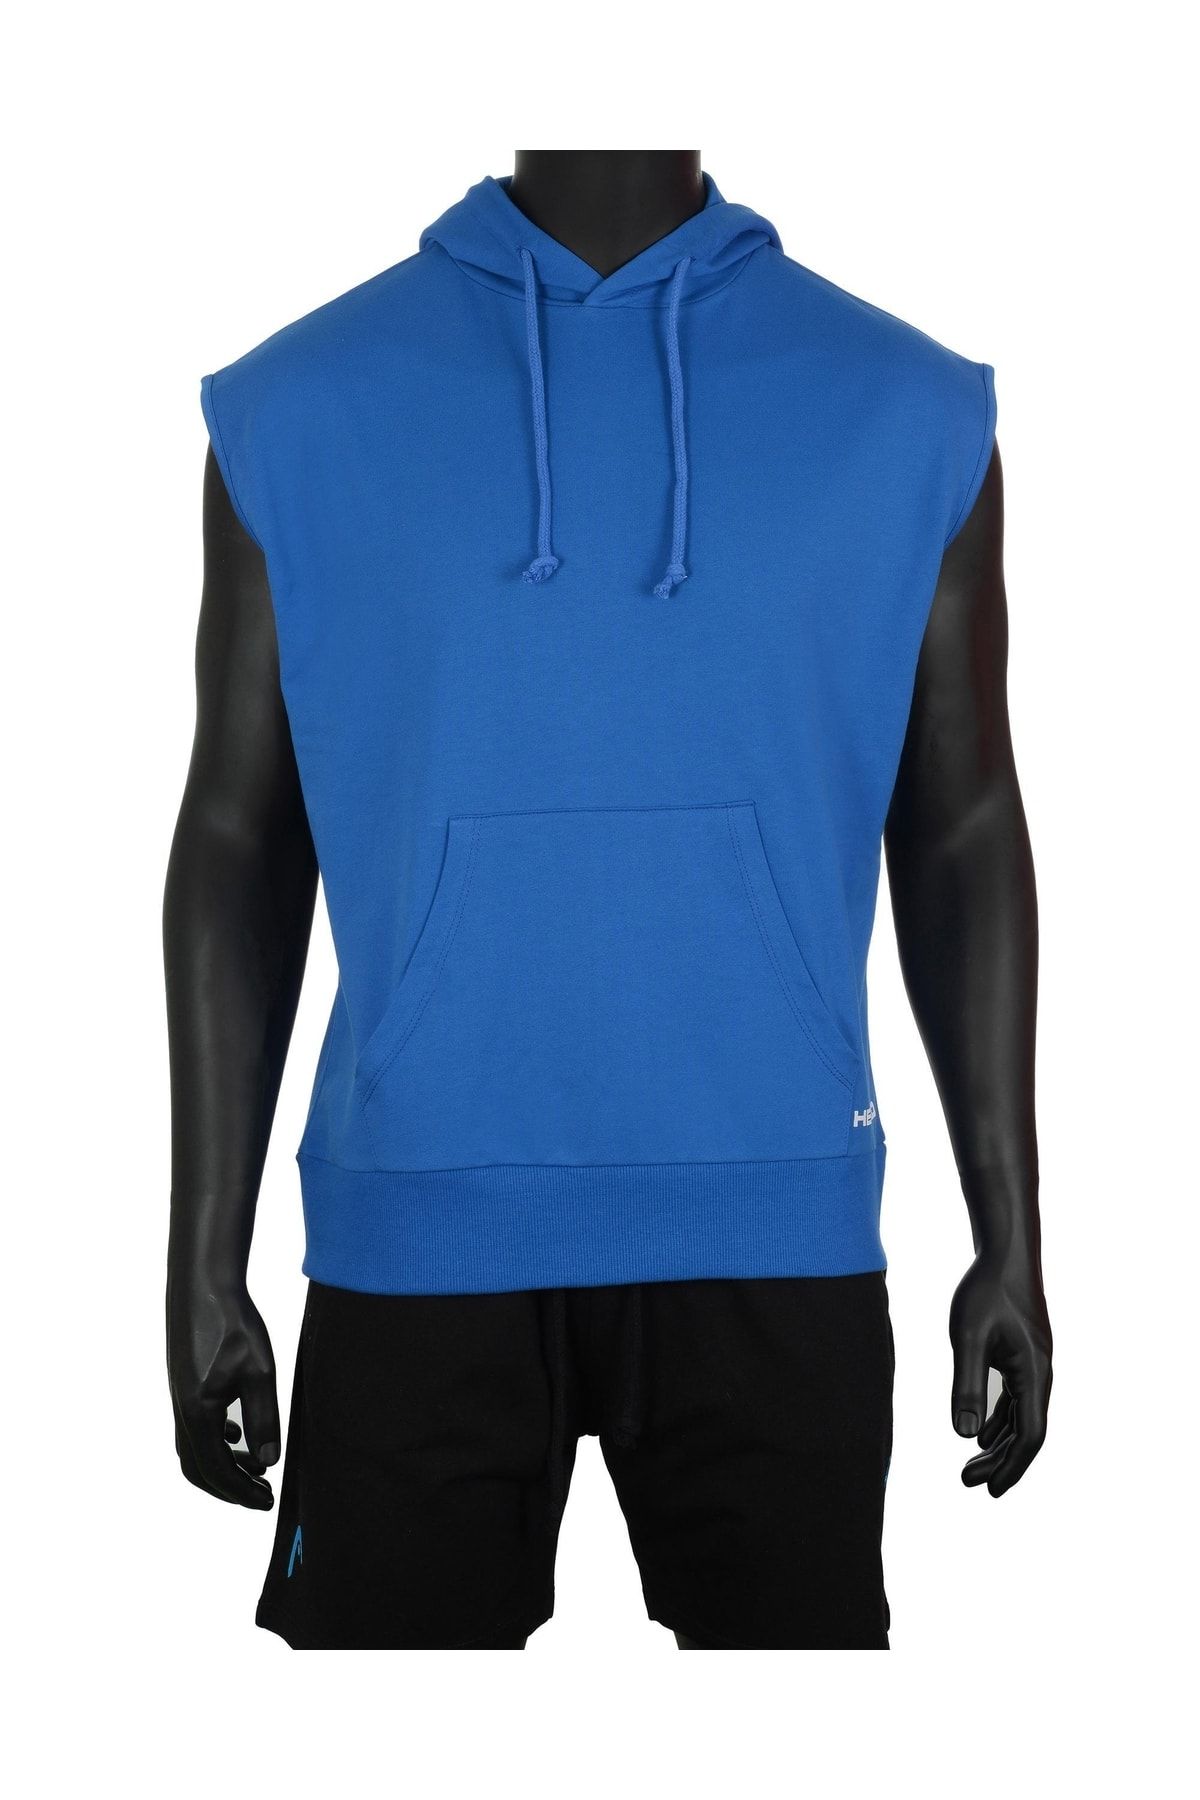 Head Erkek Mavi Logo Baskılı Düz Renk Mevsimlik Kapüşonlu Hoodie Sweatshirt